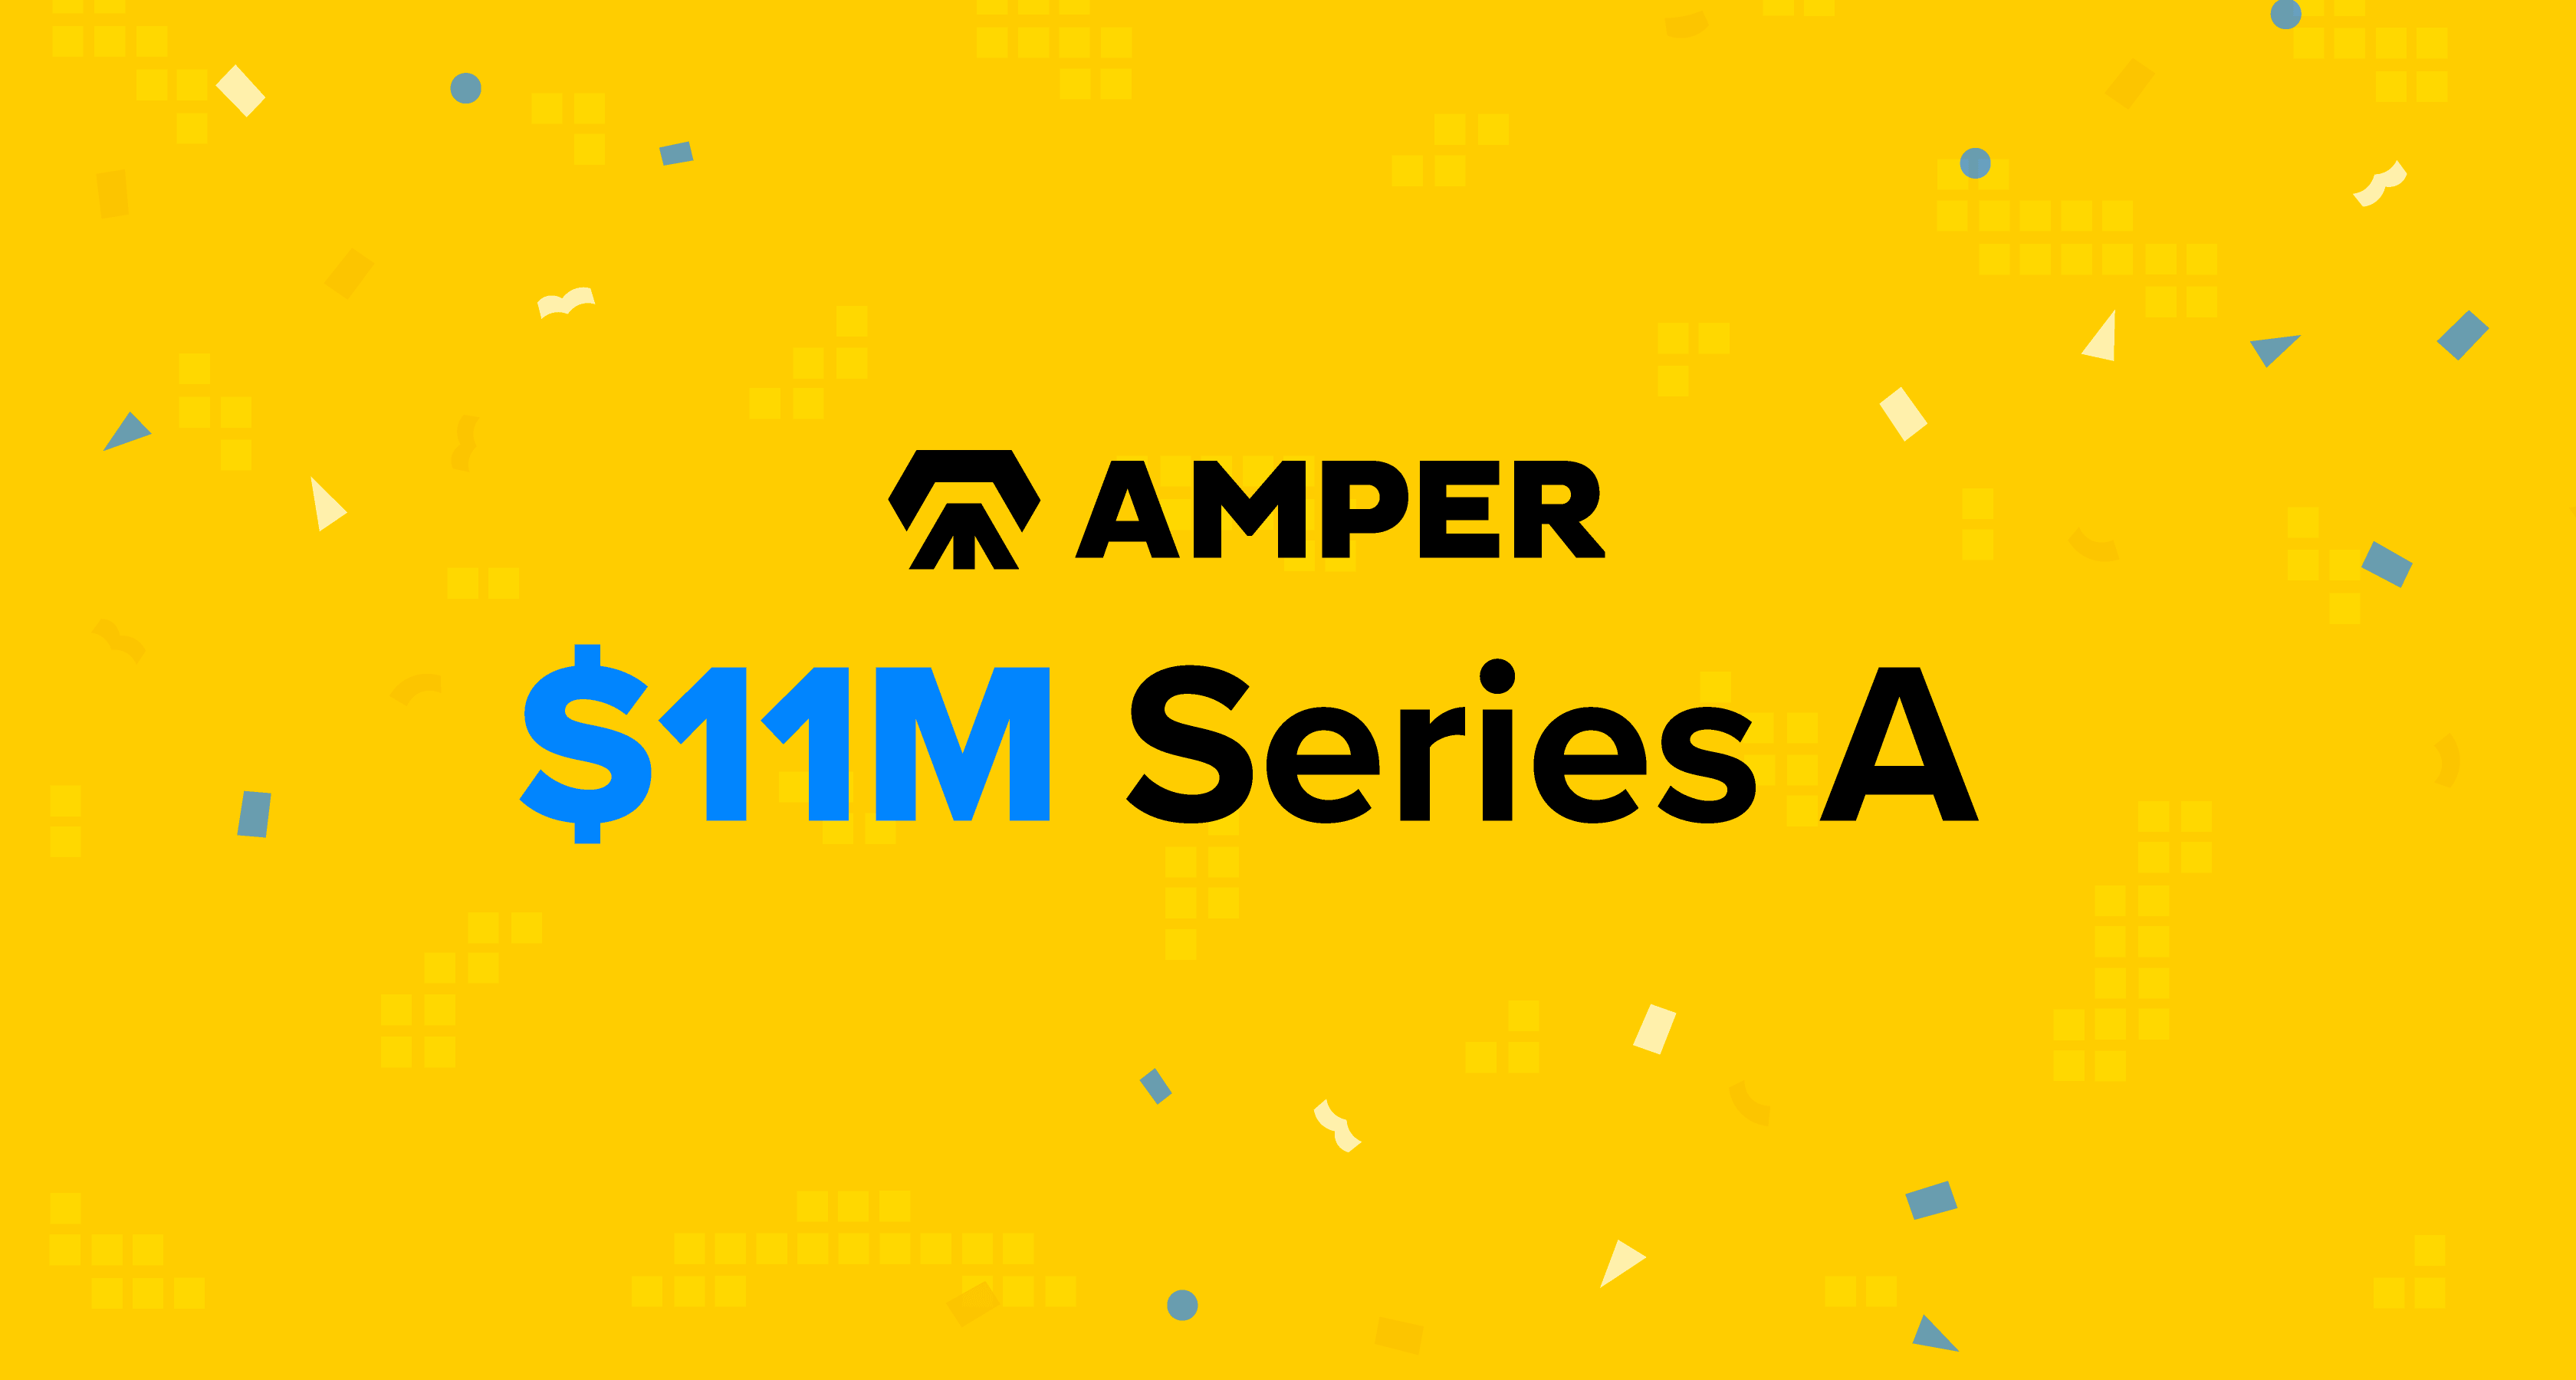 amper series a press release